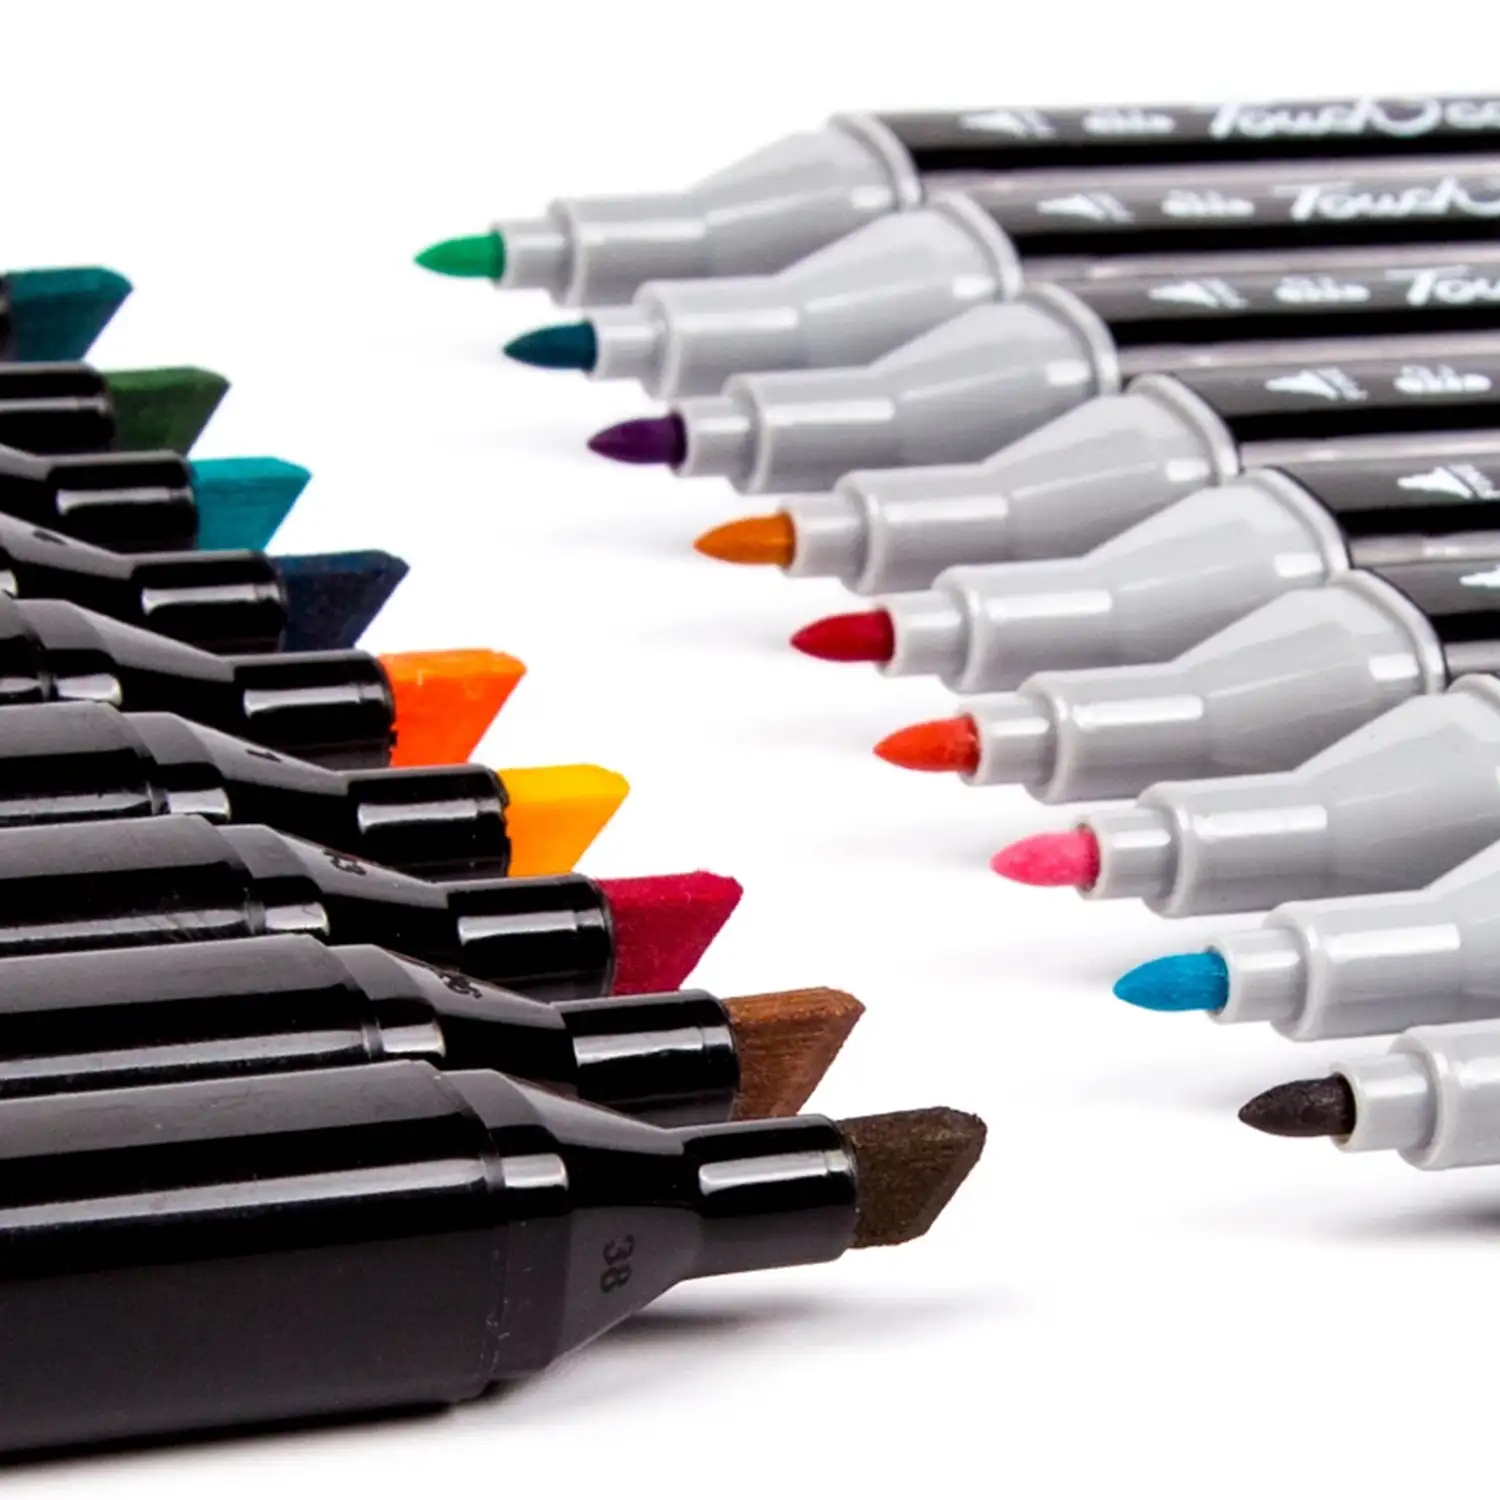 Set de 262 rotuladores en colores variados. Doble punta: fina y ancha en el mismo rotulador.